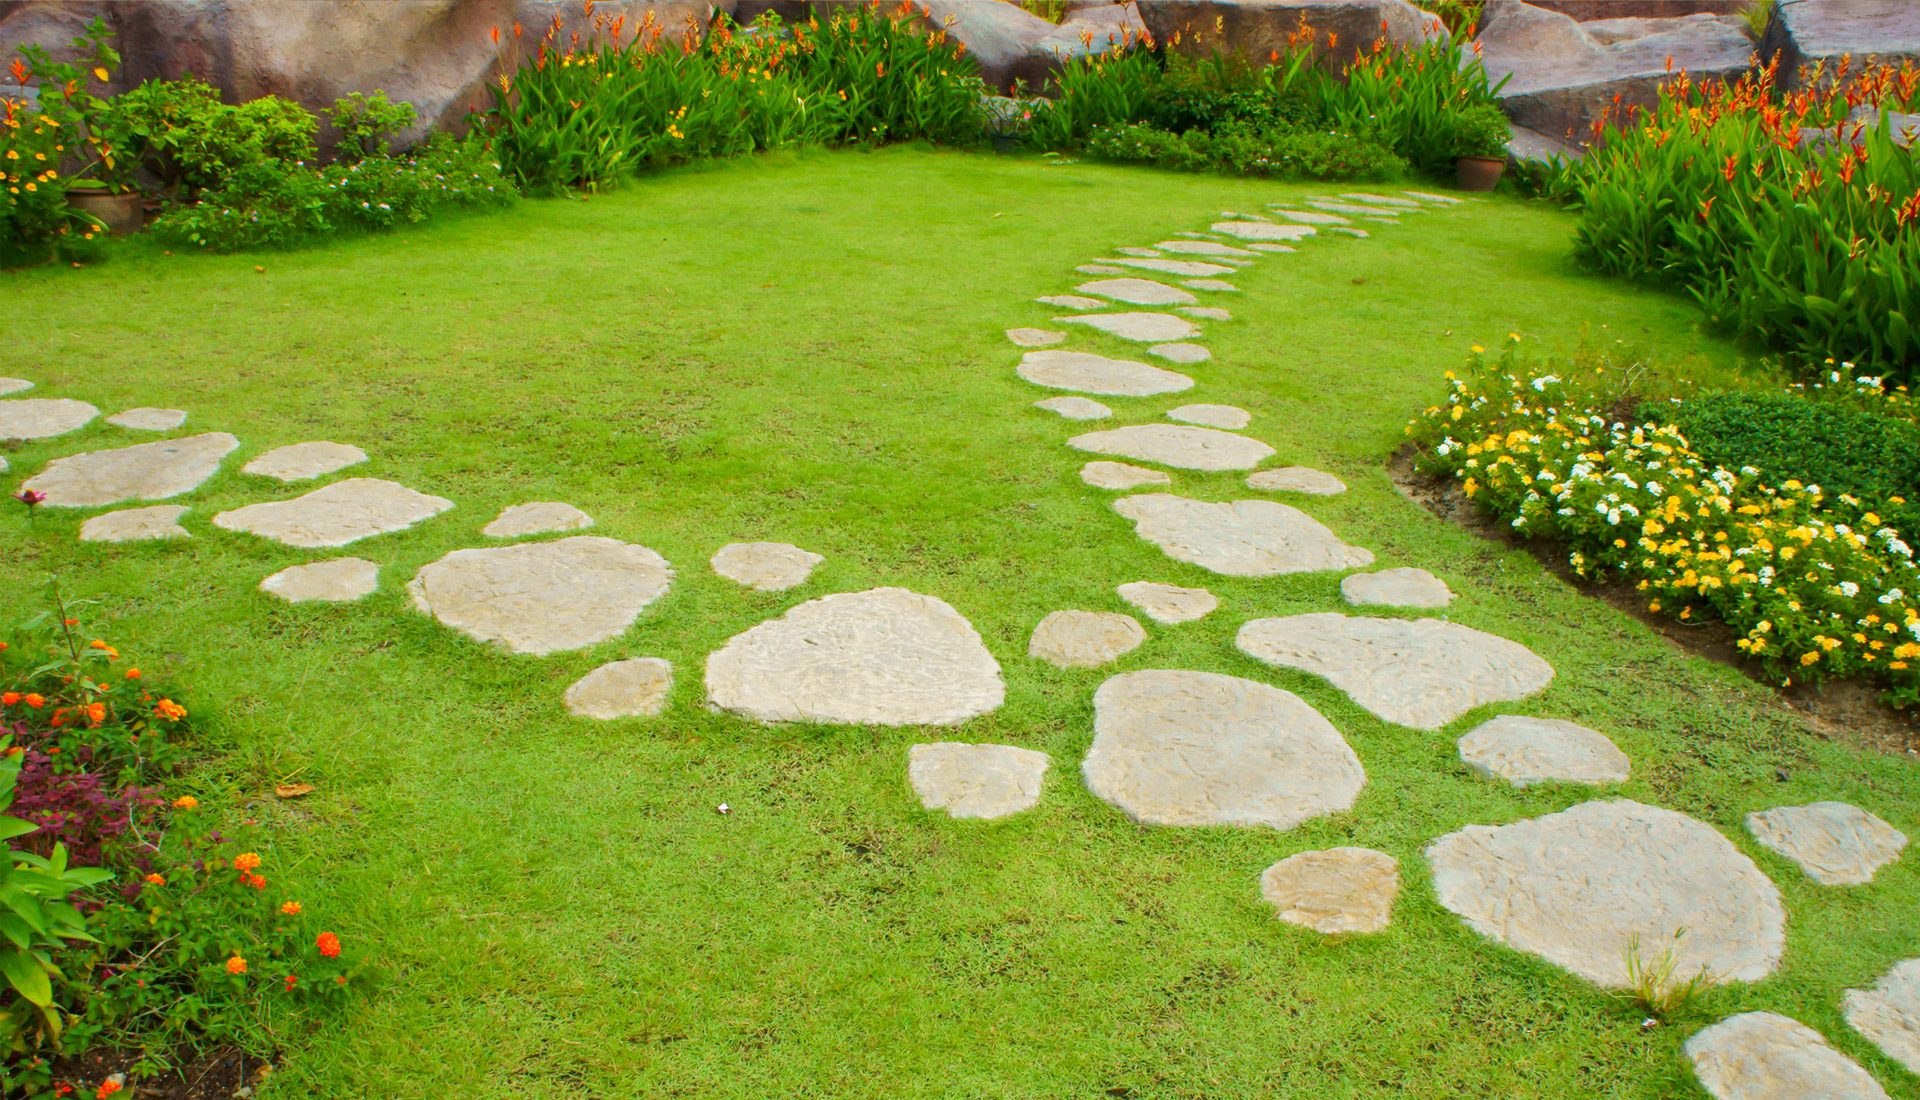 Nice Garden Stepping Stone Design Ideas Diy Garden Path Stone